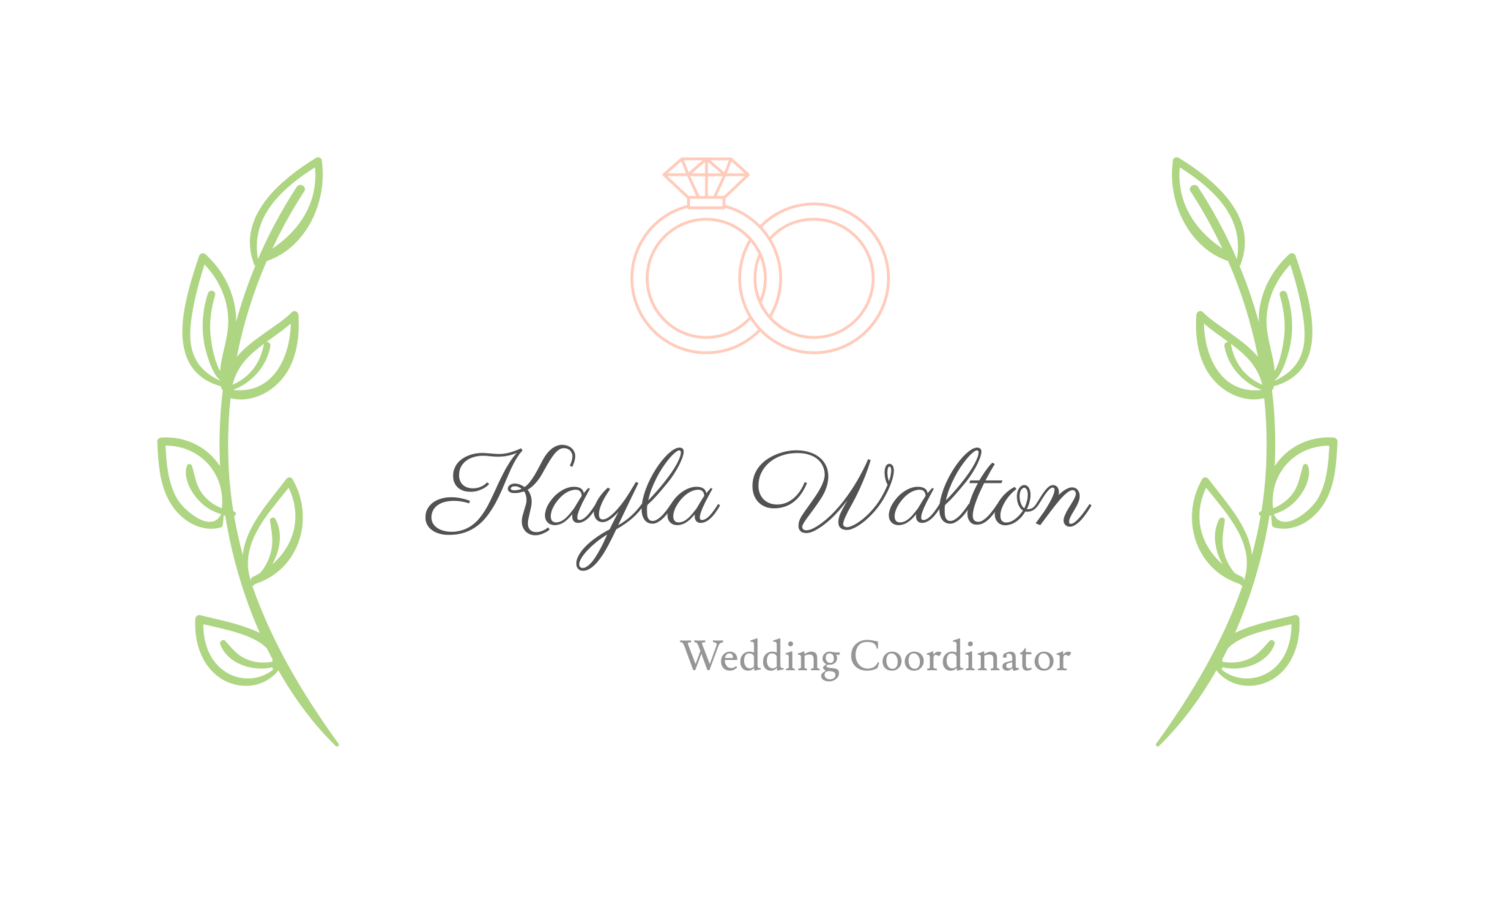 Kayla Walton- Wedding Coordinator 